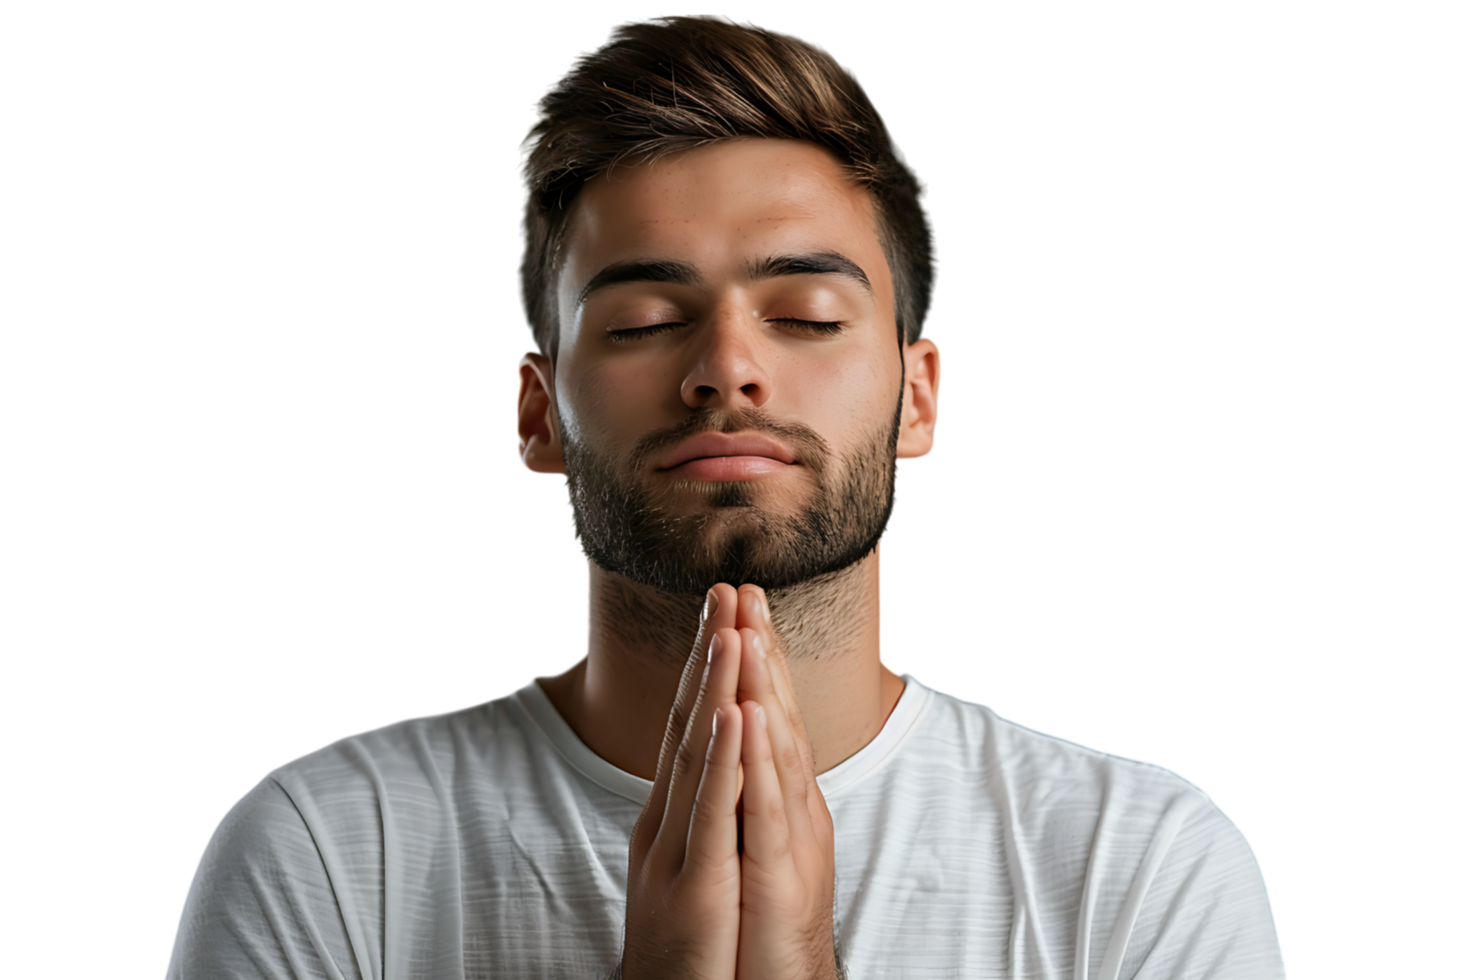 grave uomo con chiuso occhi mostrando preghiere gesto su isolato trasparente sfondo png